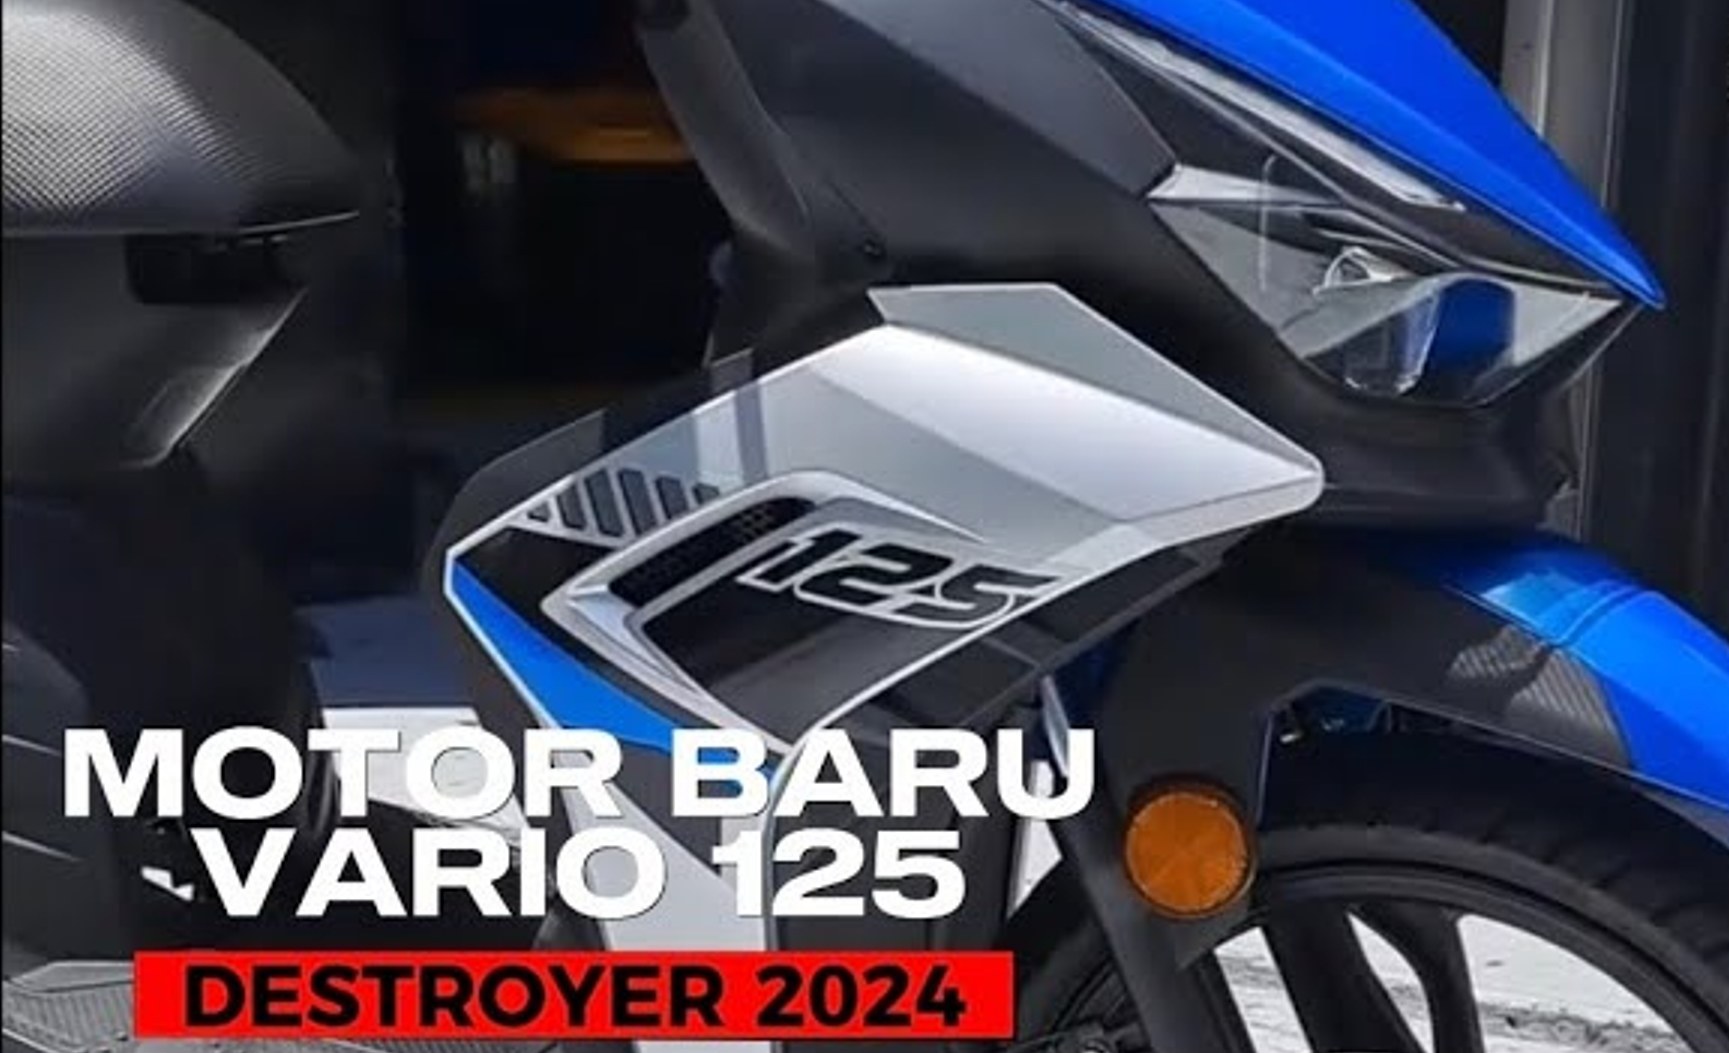 Motor Skutik Terbaru Penantang Vario, Kmyco Micare 125 Segera Rilis Tahun 2024?